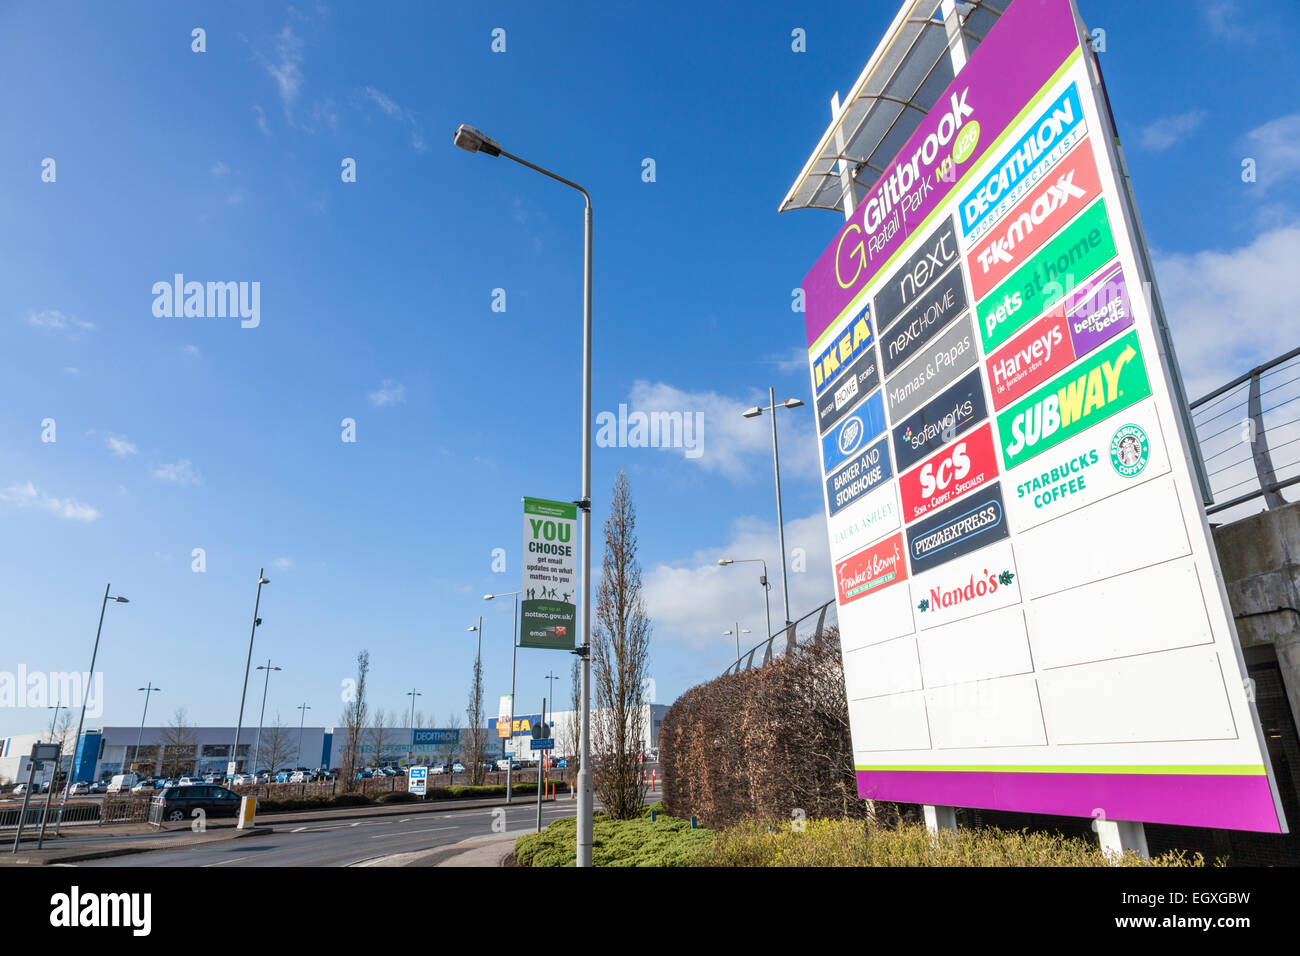 Giltbrook Retail Park, Lancashire, England, UK Banque D'Images